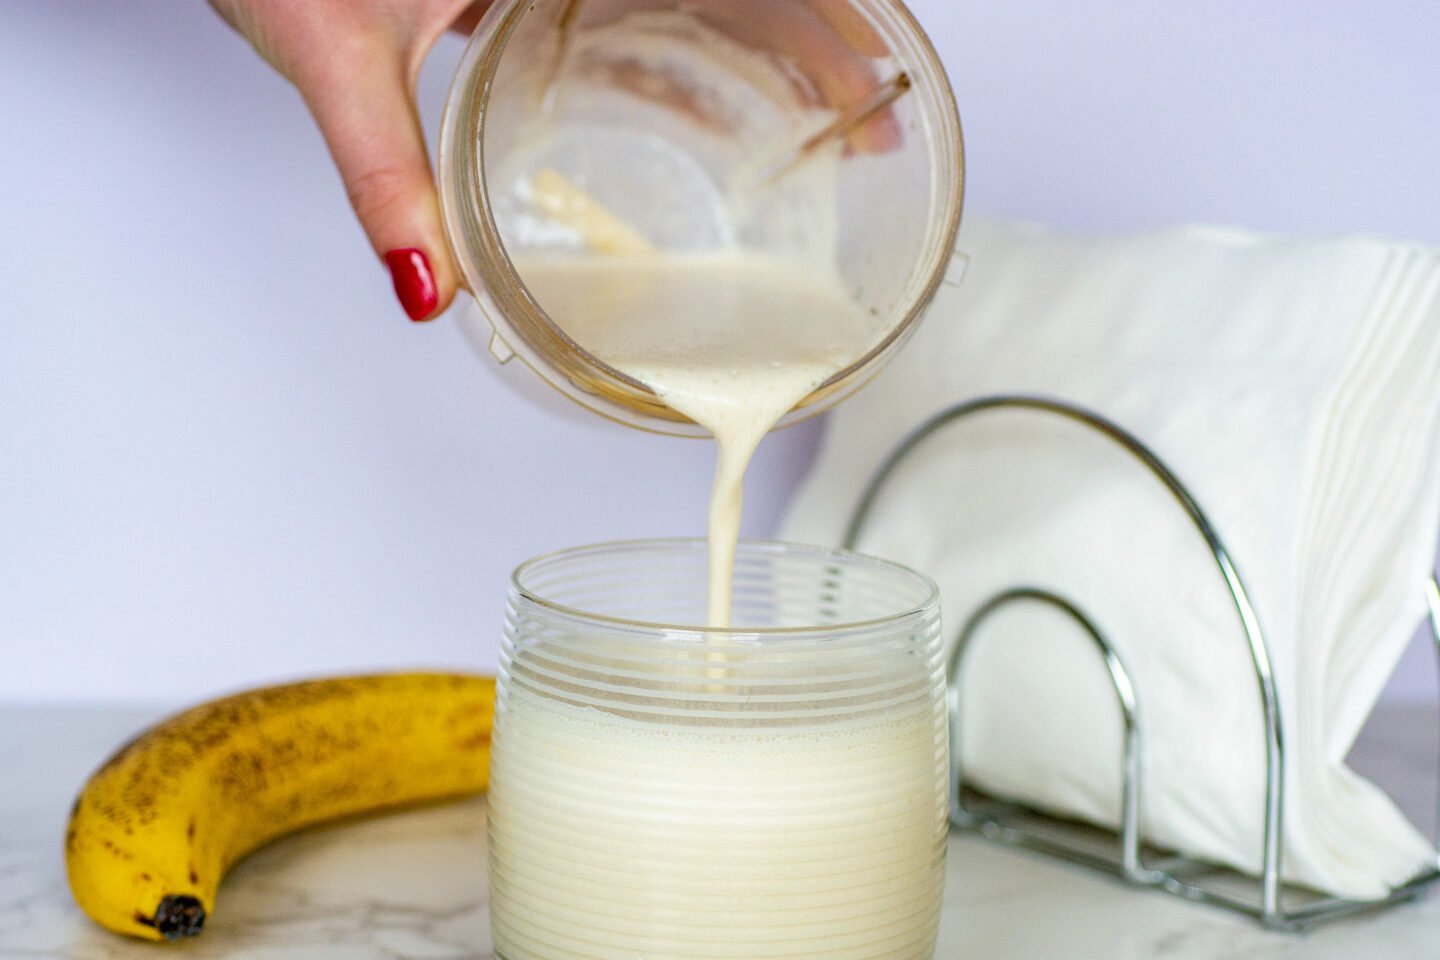 pouring korean banana milk into a glass